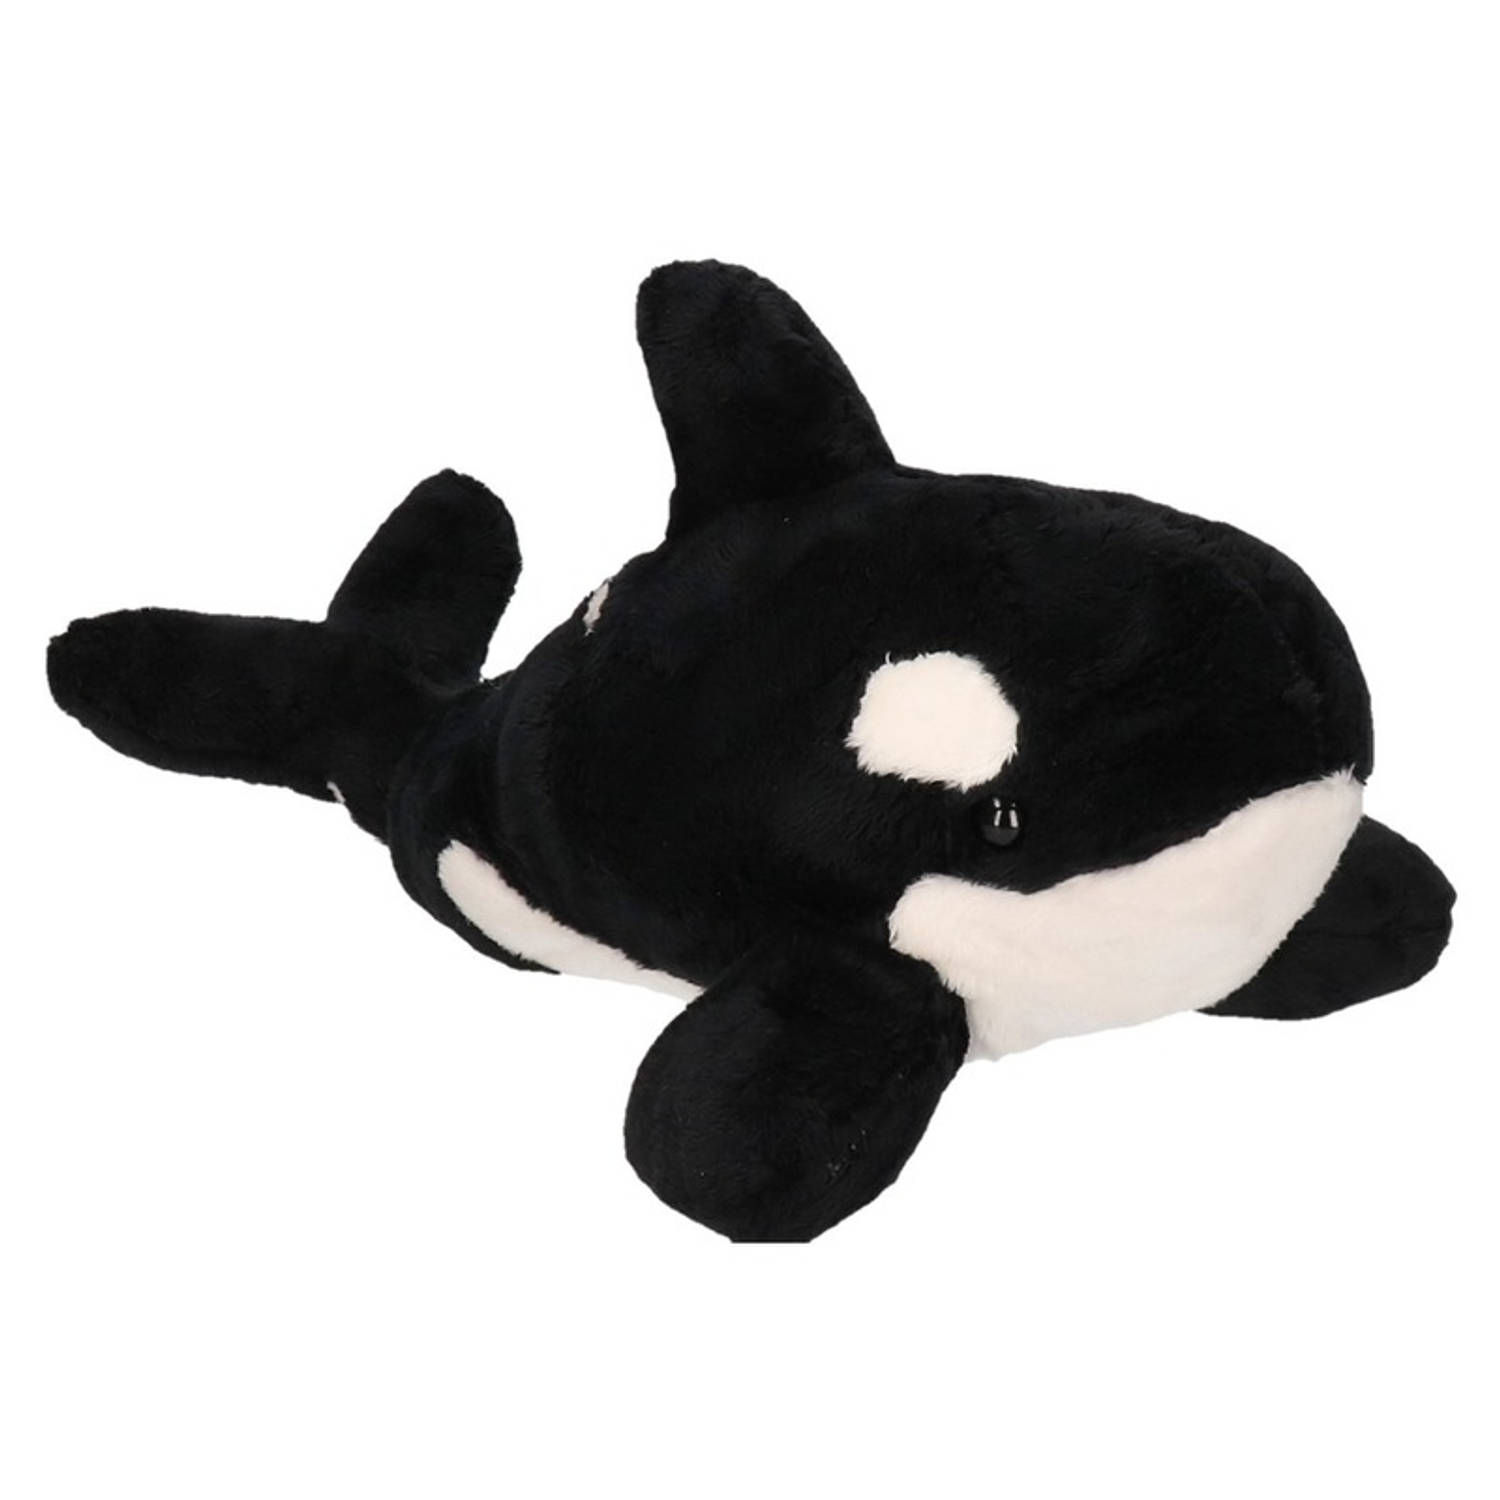 Pluche Zwart-witte Orka Knuffel 36 Cm Orka Zeedieren Knuffels Speelgoed Voor Kinderen